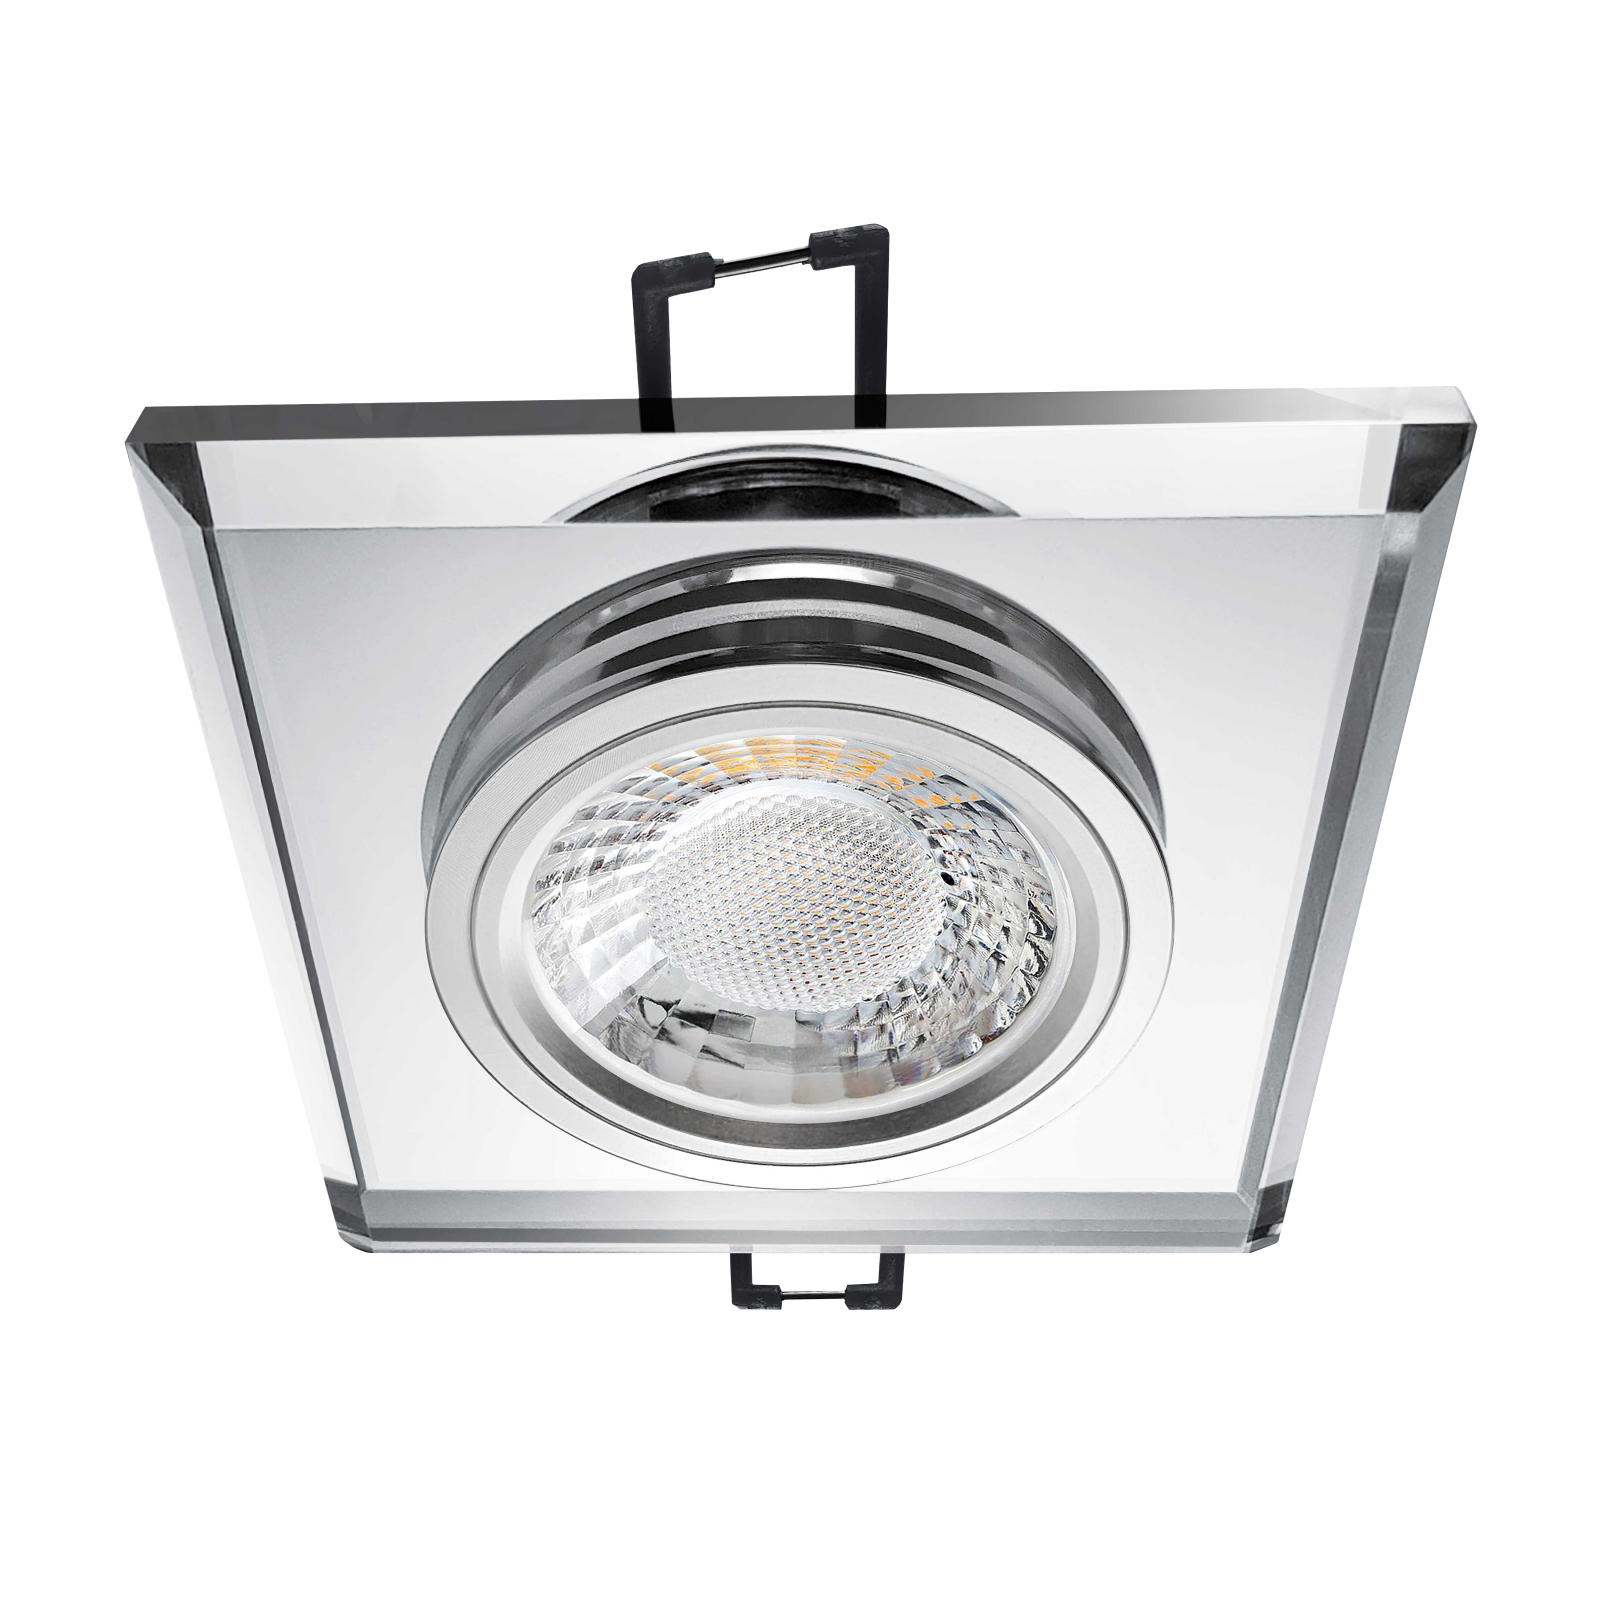 LED Einbaustrahler spiegelnd | Quadratischer Einbauspot Echtglas | Lochmaß Ø 68mm - 80mm | geringe Einbautiefe 24mm | Anschlussfertig 